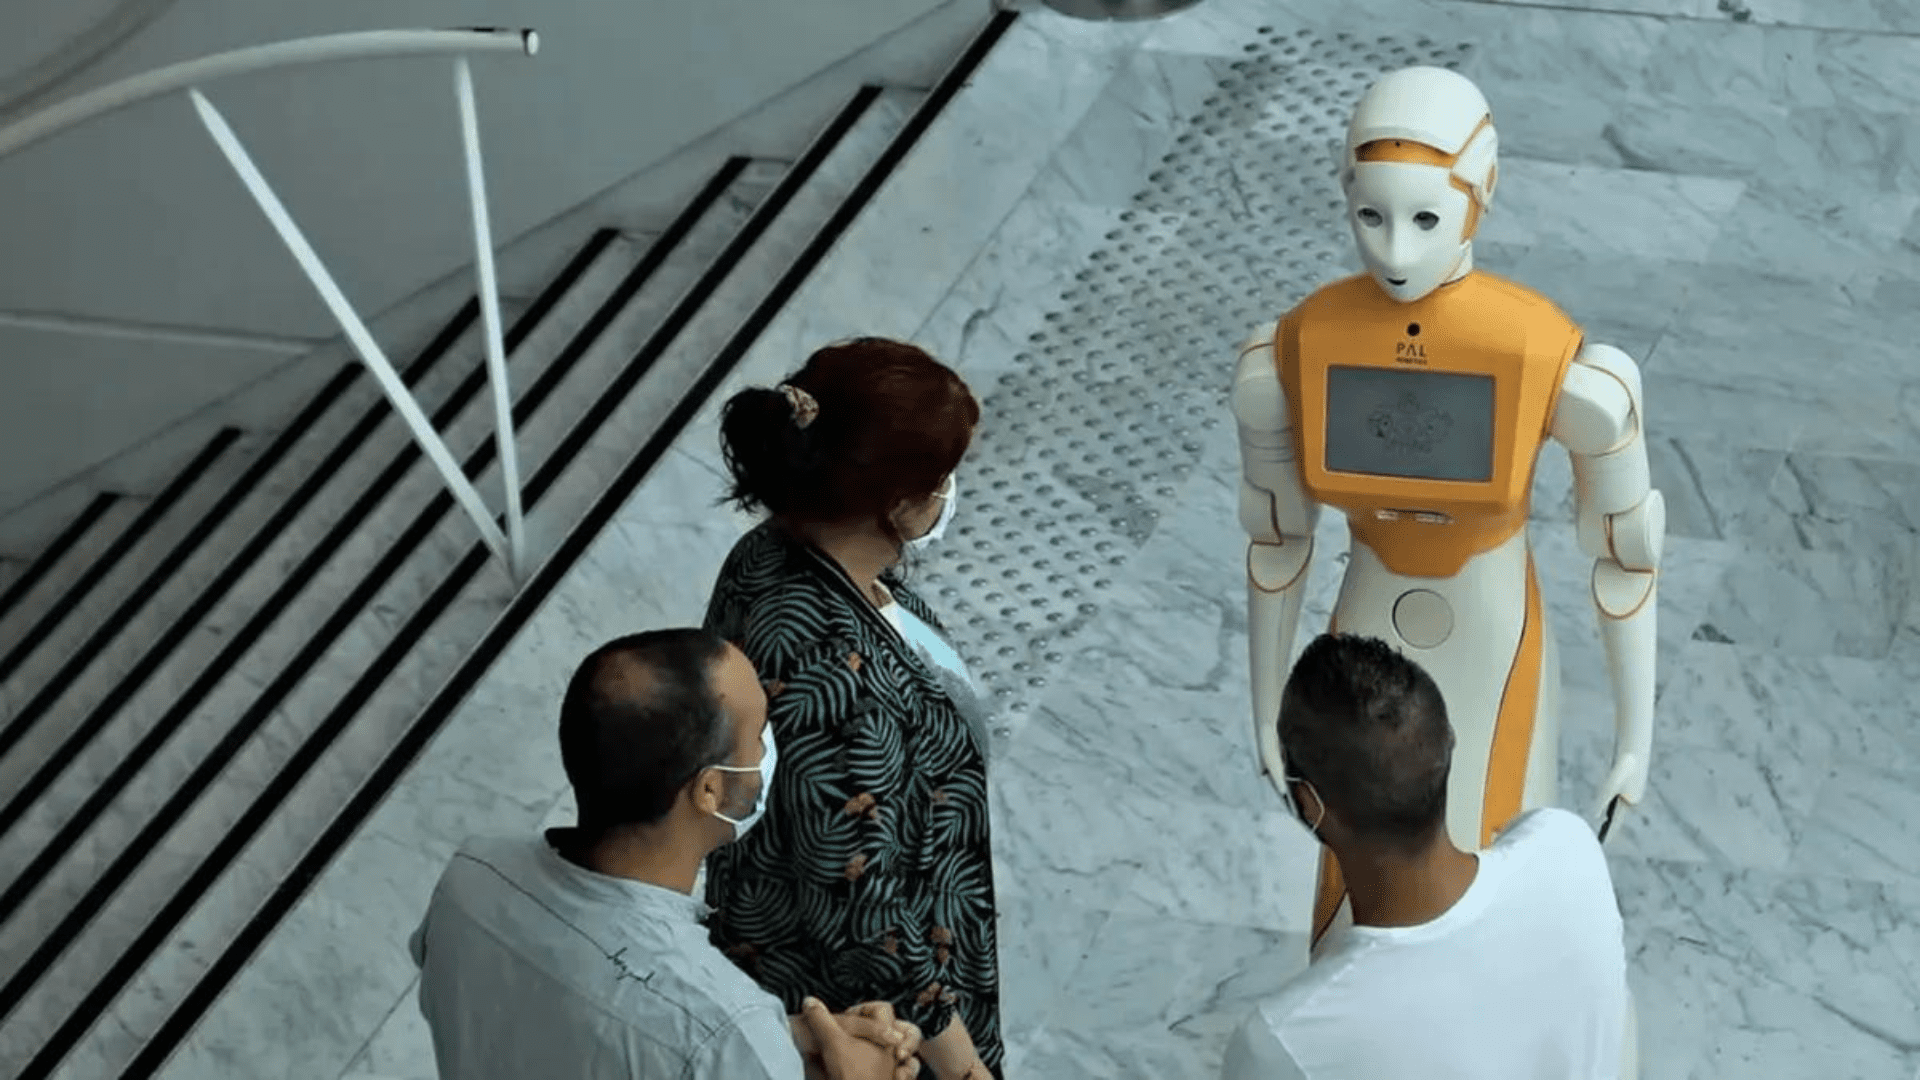 Socially assistive robot 